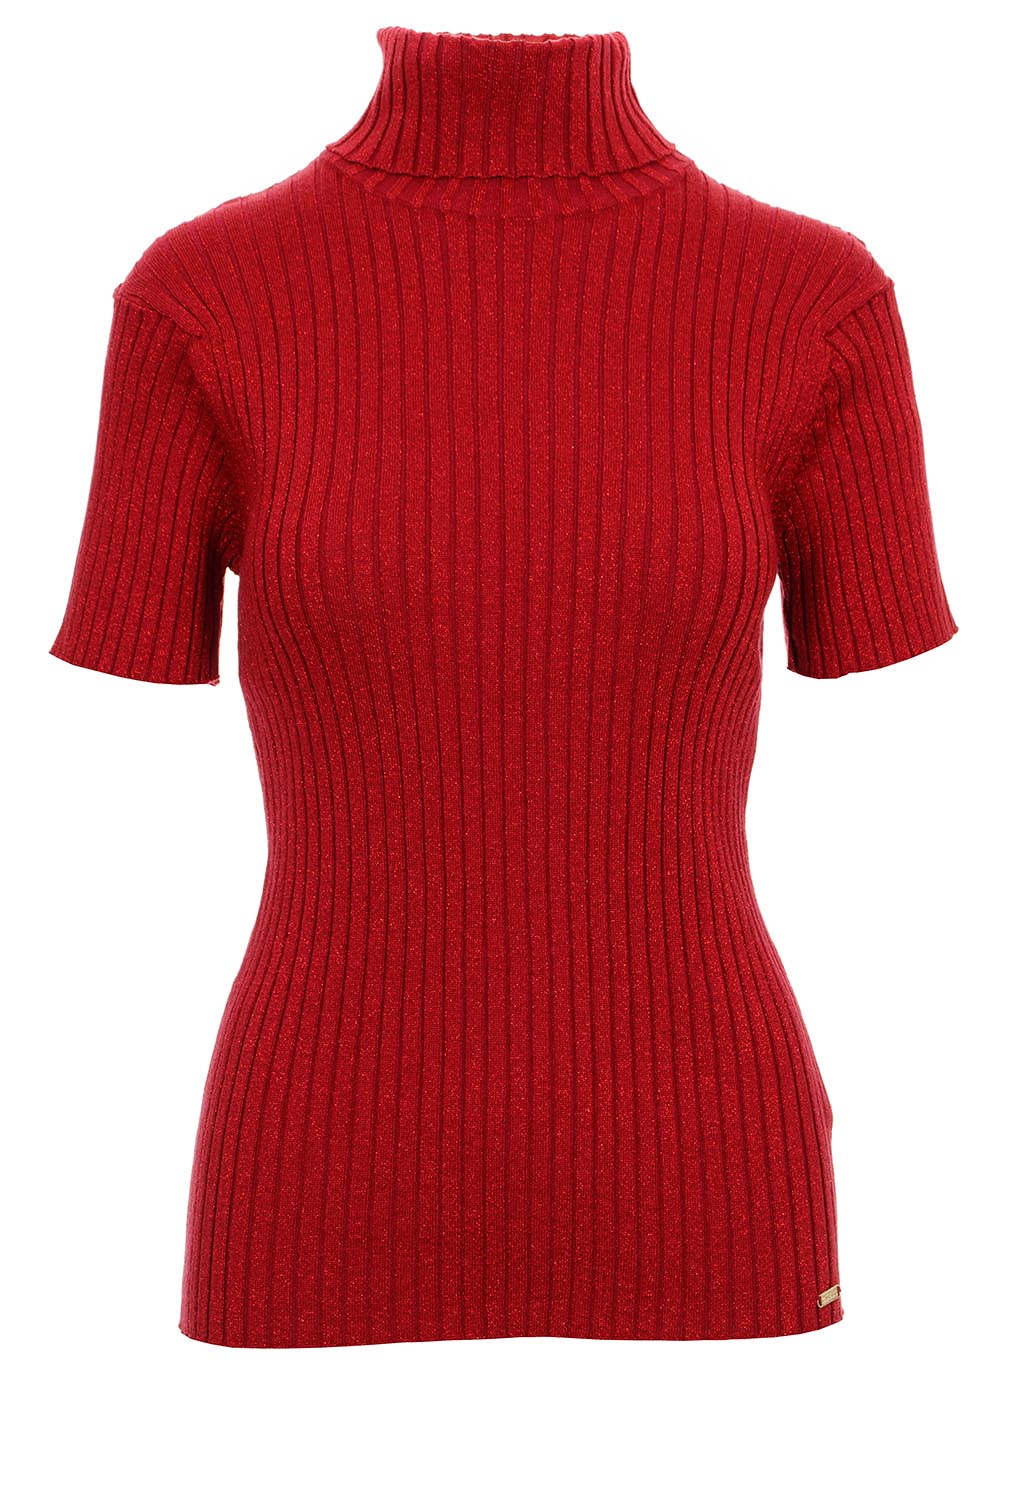 Guess dámské úpletové tričko s rolákem Jolene vínově červené Velikost: XS